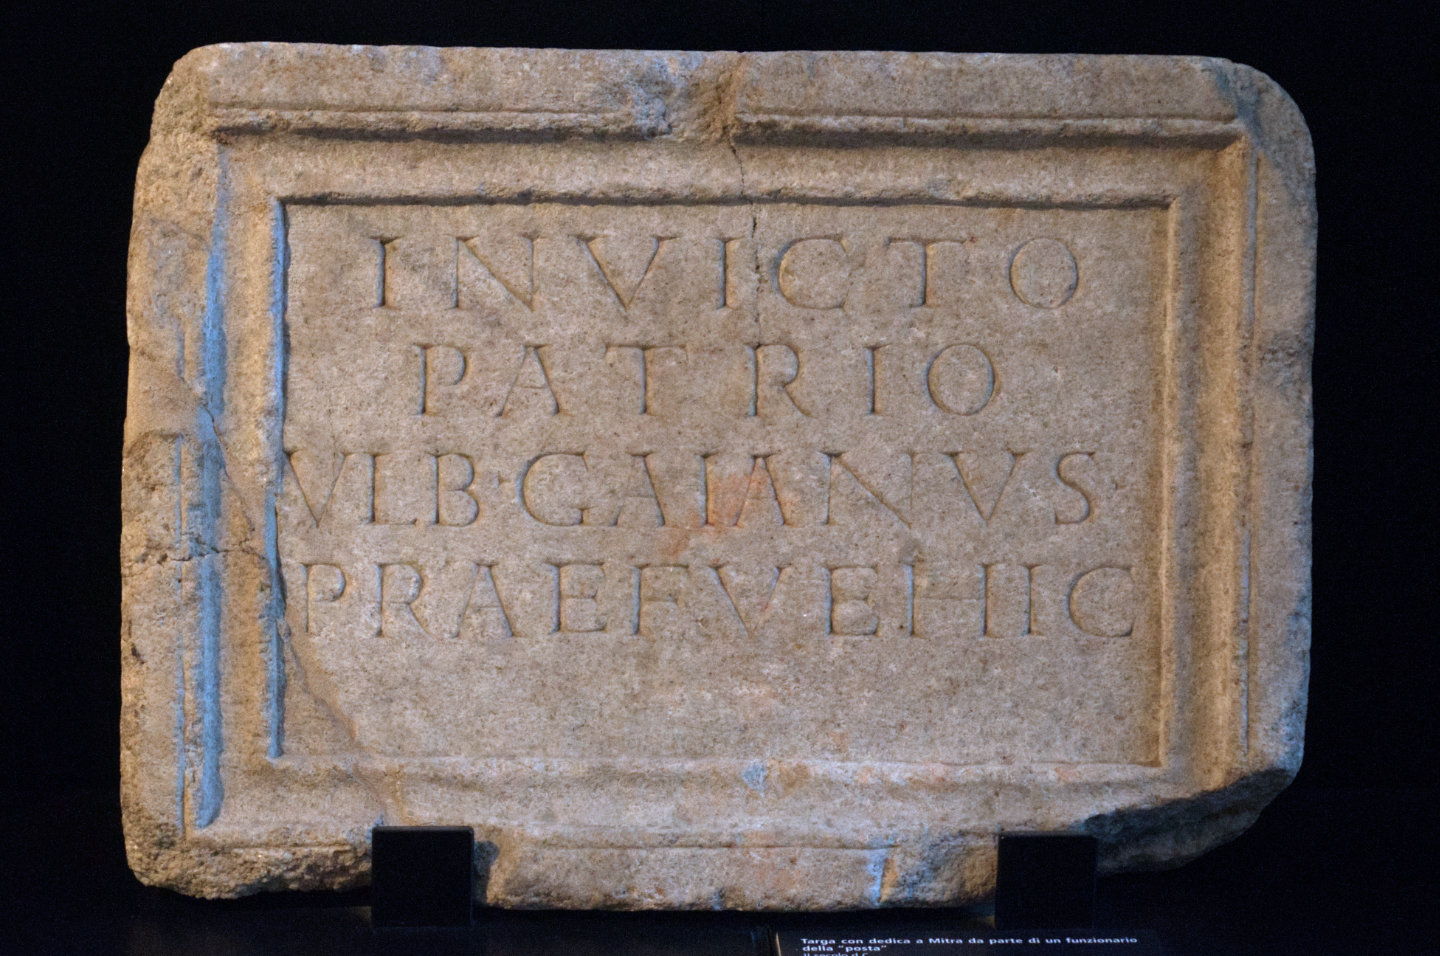 Plaque dedicated to god Mithras Invictus Patrius.